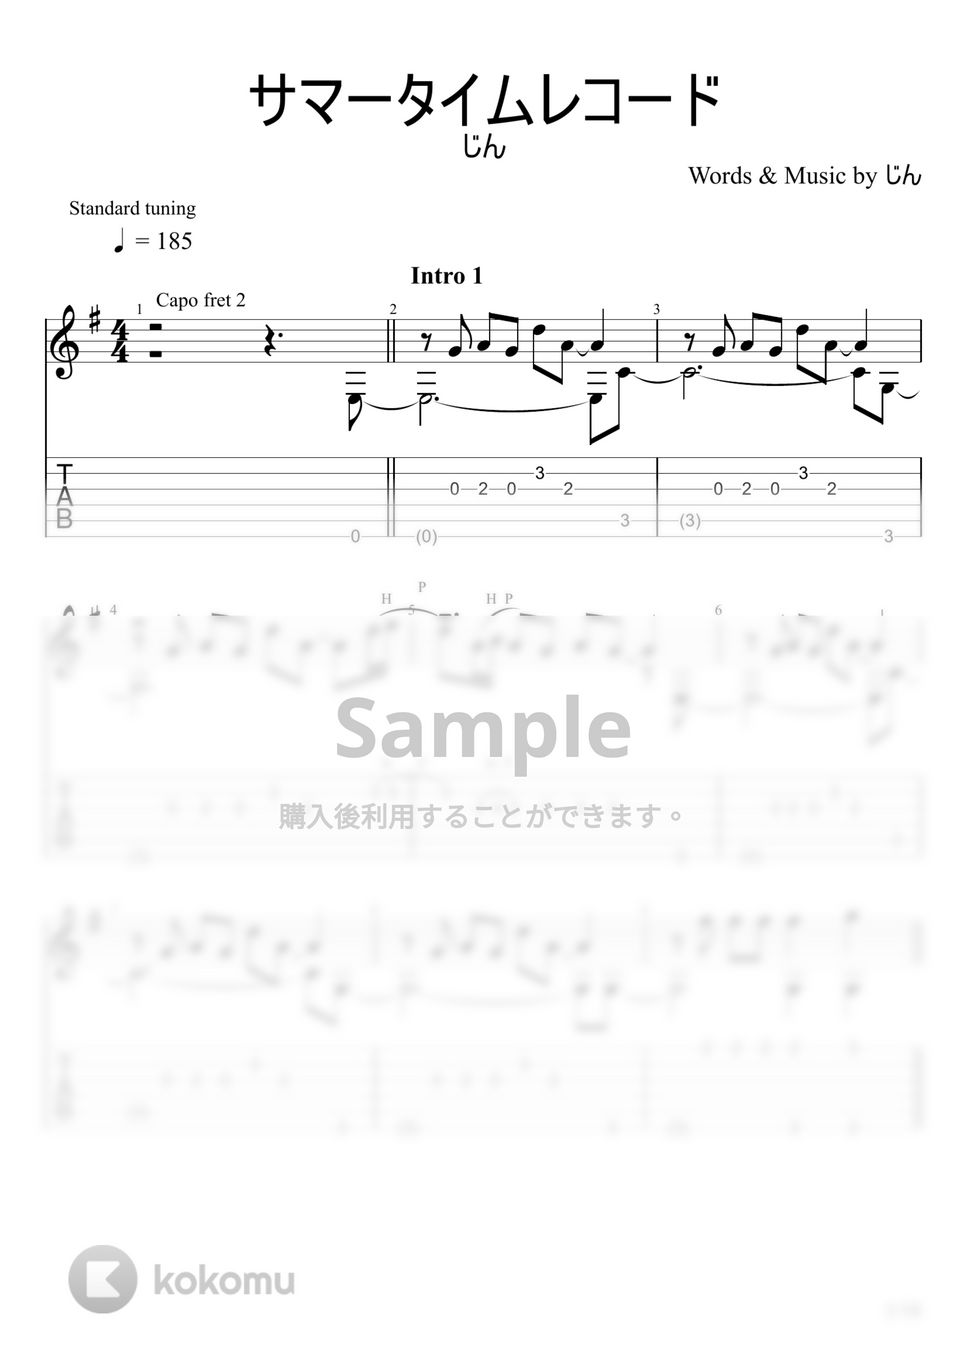 じん - サマータイムレコード (ソロギター) by u3danchou